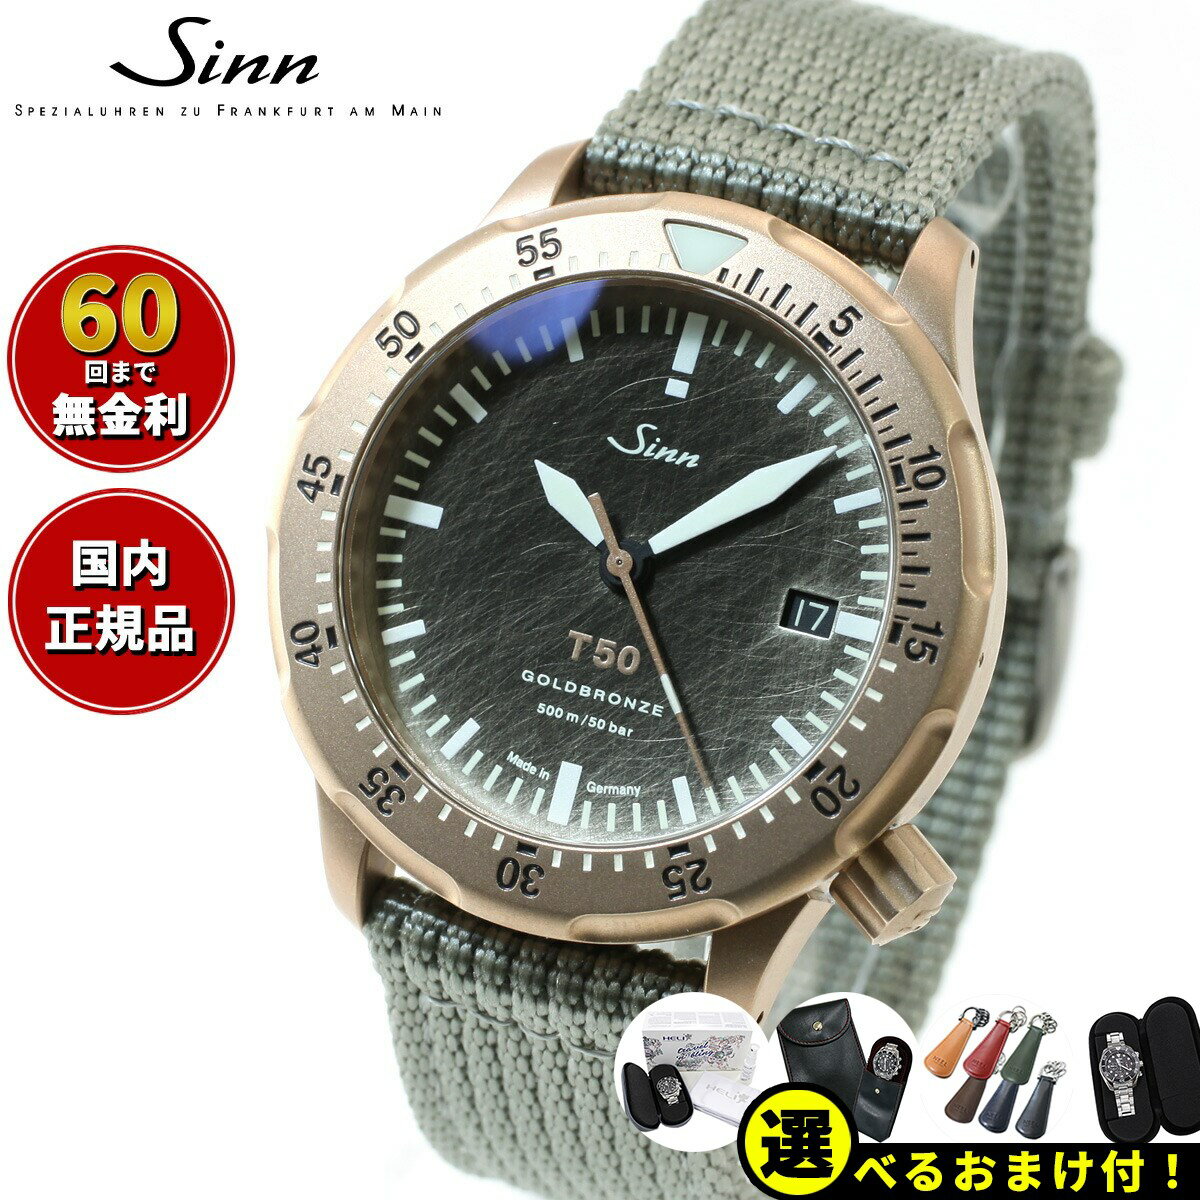 ジン 腕時計（メンズ） 【選べるノベルティー付き！】【60回分割手数料無料！】Sinn ジン T50.GOLDBRONZE 自動巻き 限定モデル 腕時計 メンズ Diving Watches ダイバーズウォッチ テキスタイルストラップ ドイツ製